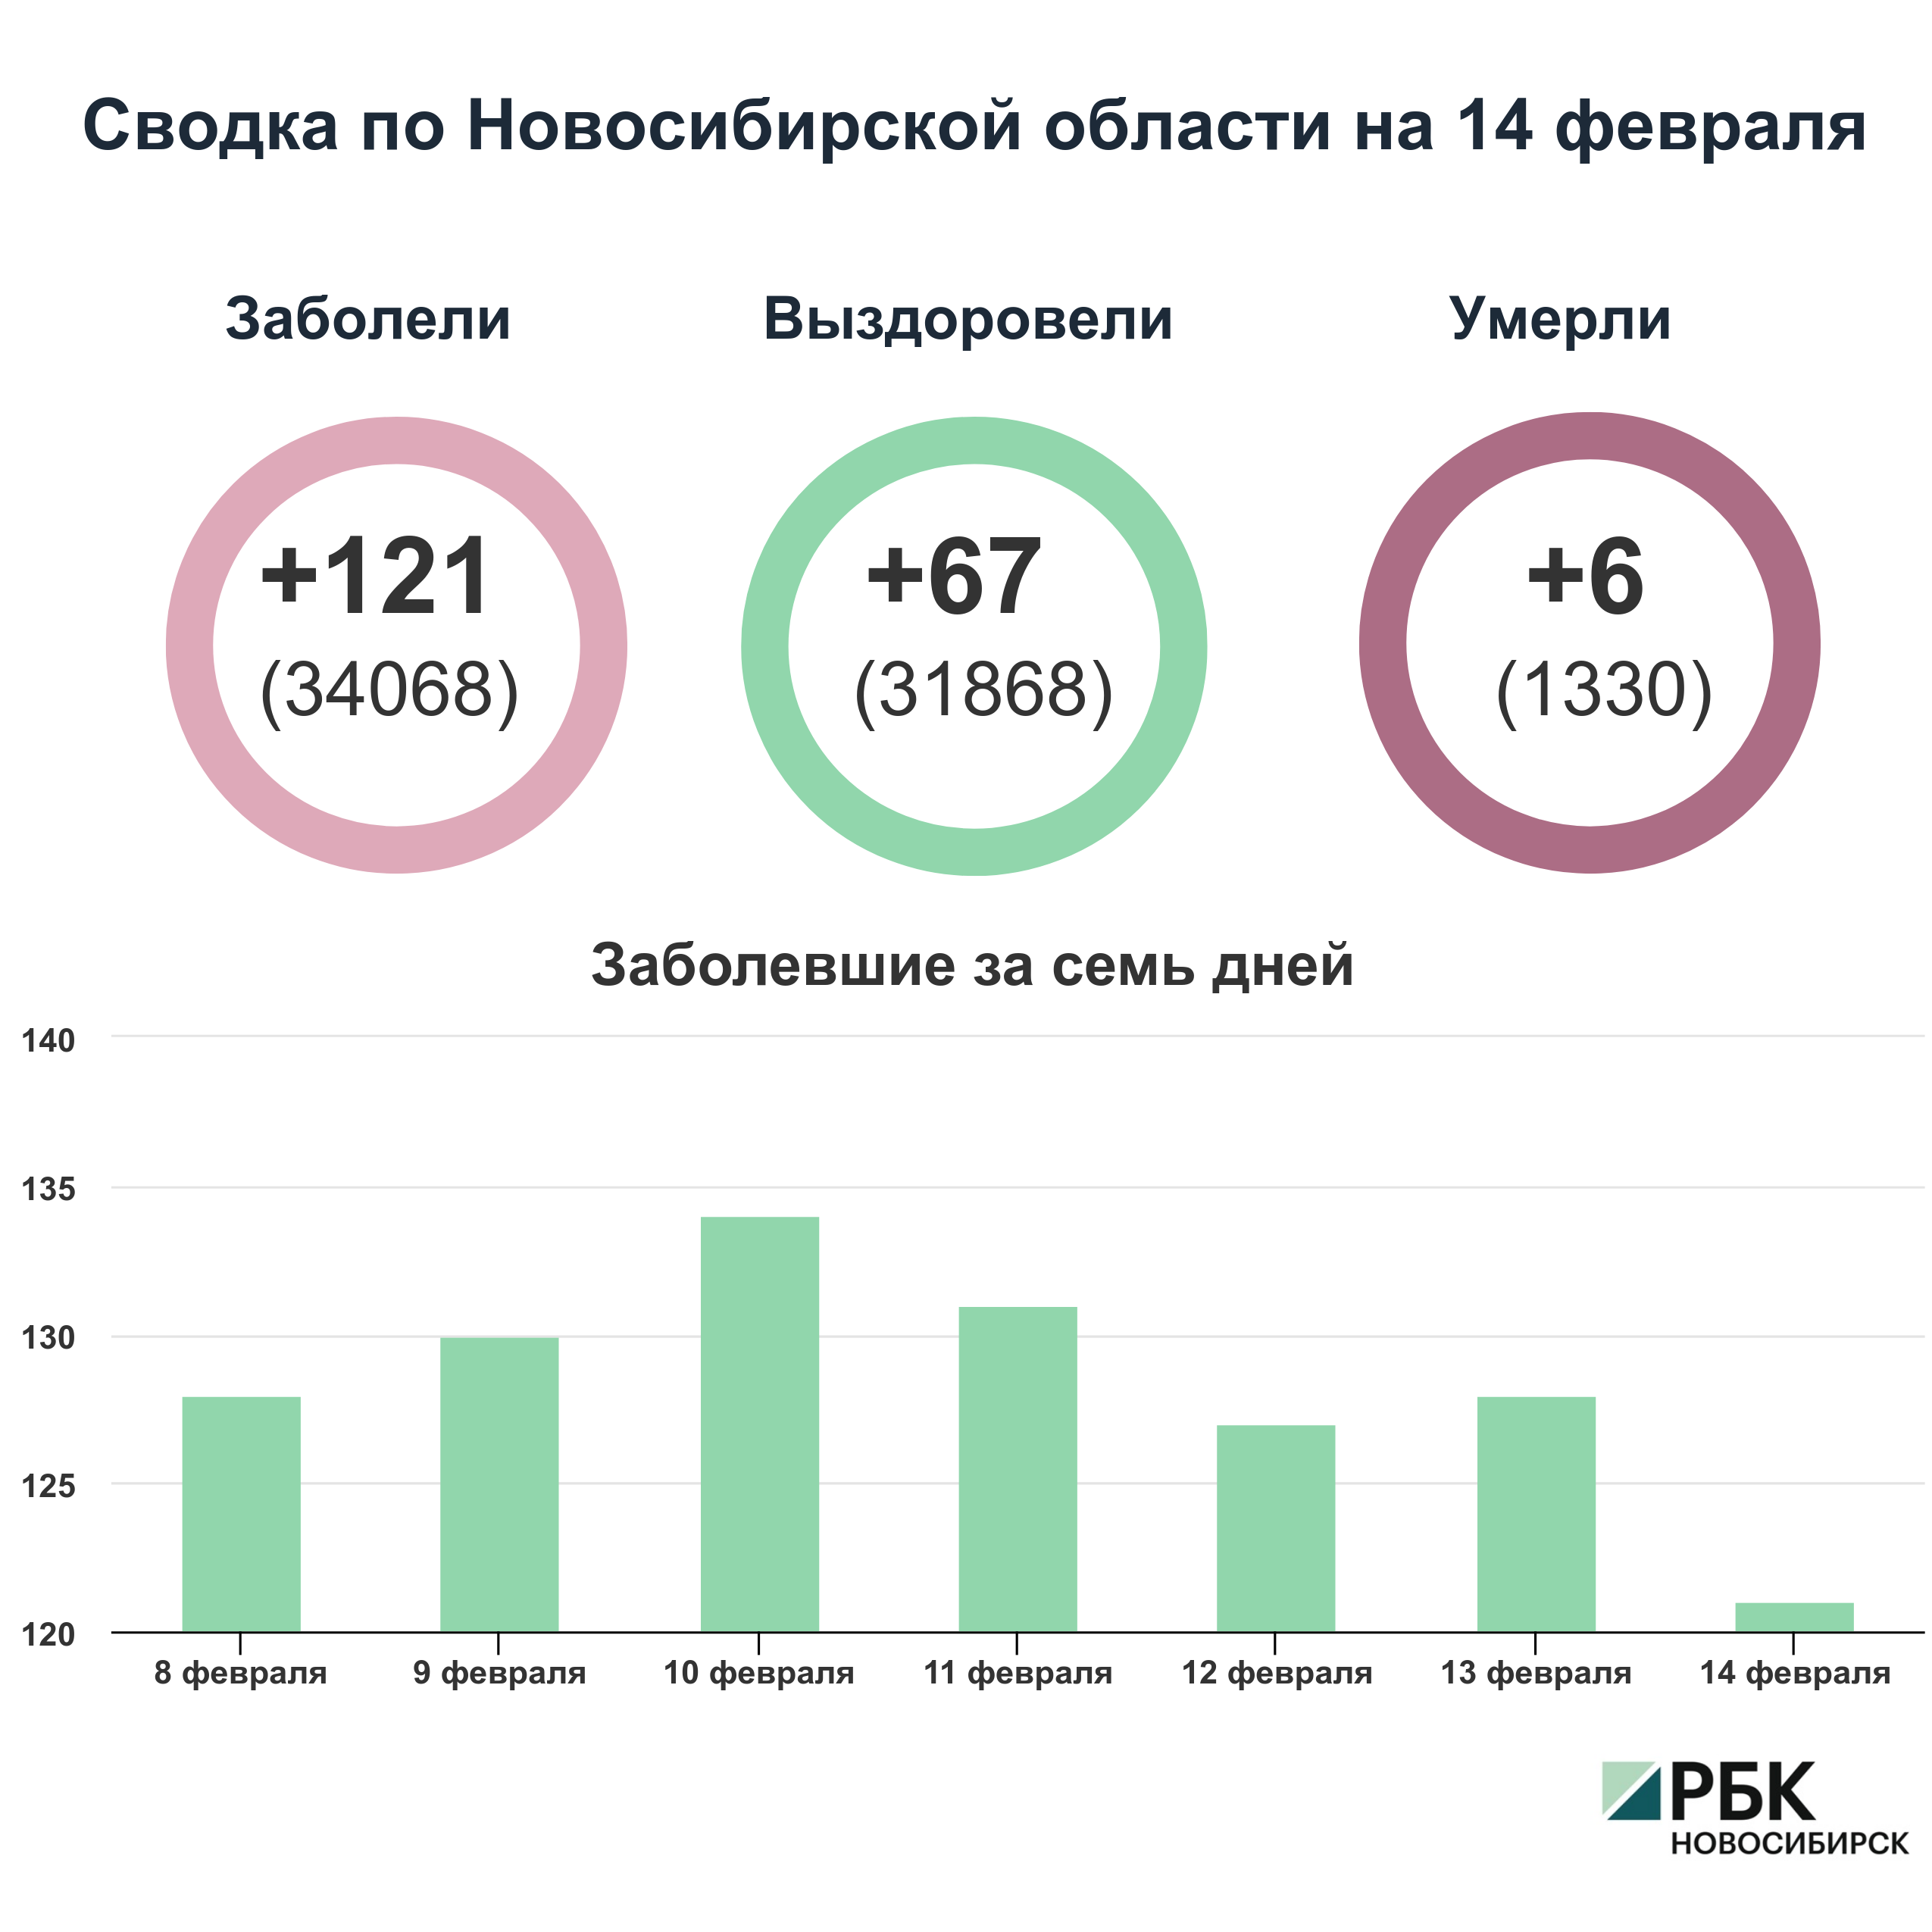 Коронавирус в Новосибирске: сводка на 14 февраля